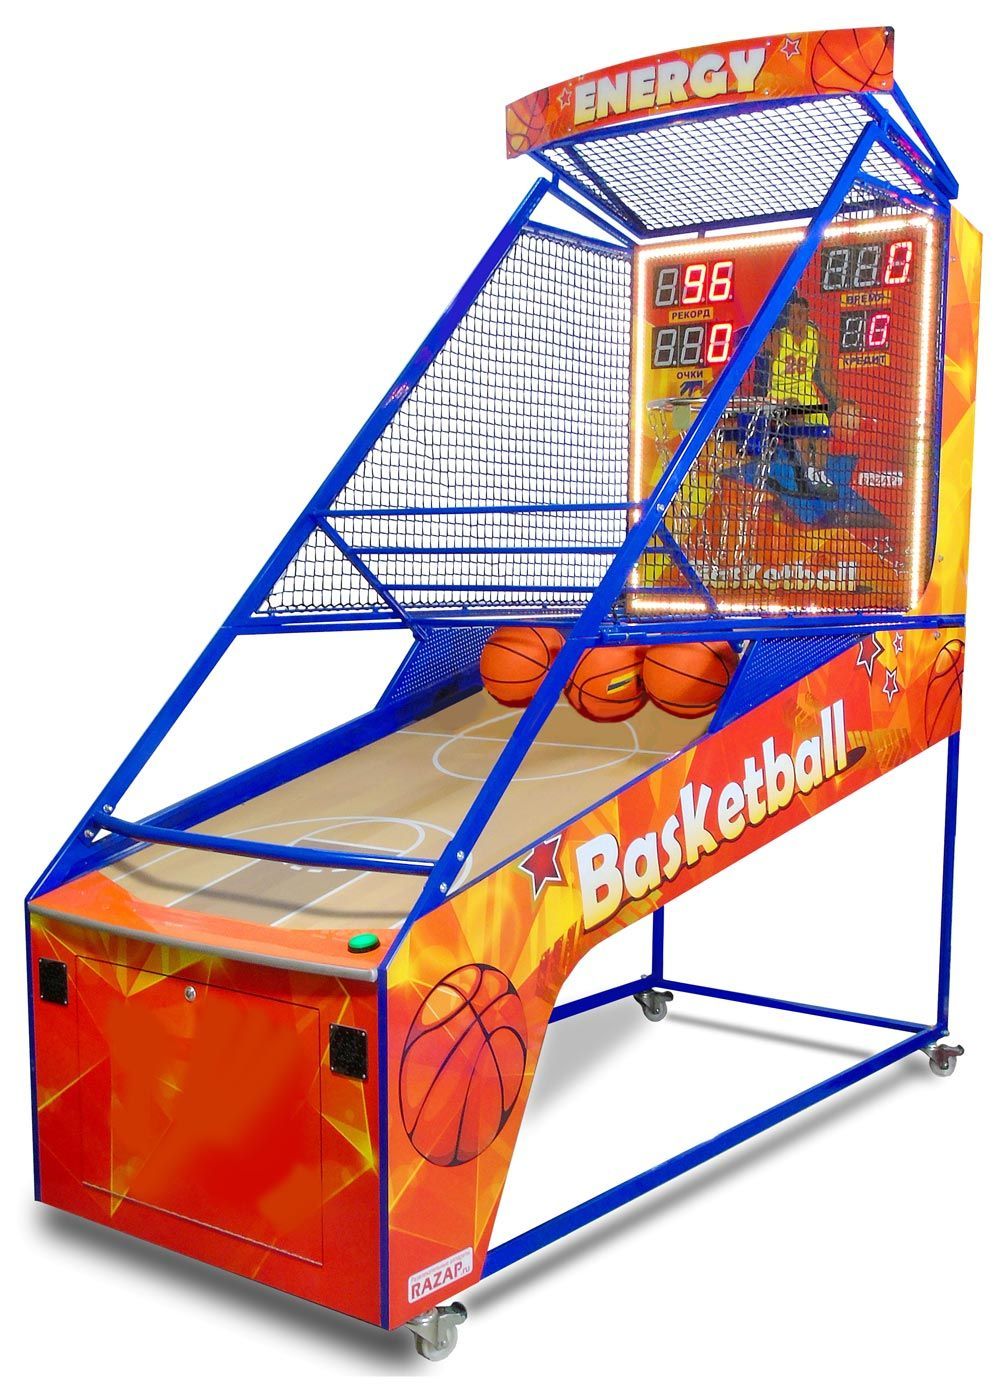 Развлечения оборудование. Баскетбольный аппарат игровой NBS. Детские игровые аппараты. Баскетбольный игровой автомат. Детский игровой автомат баскетбол.